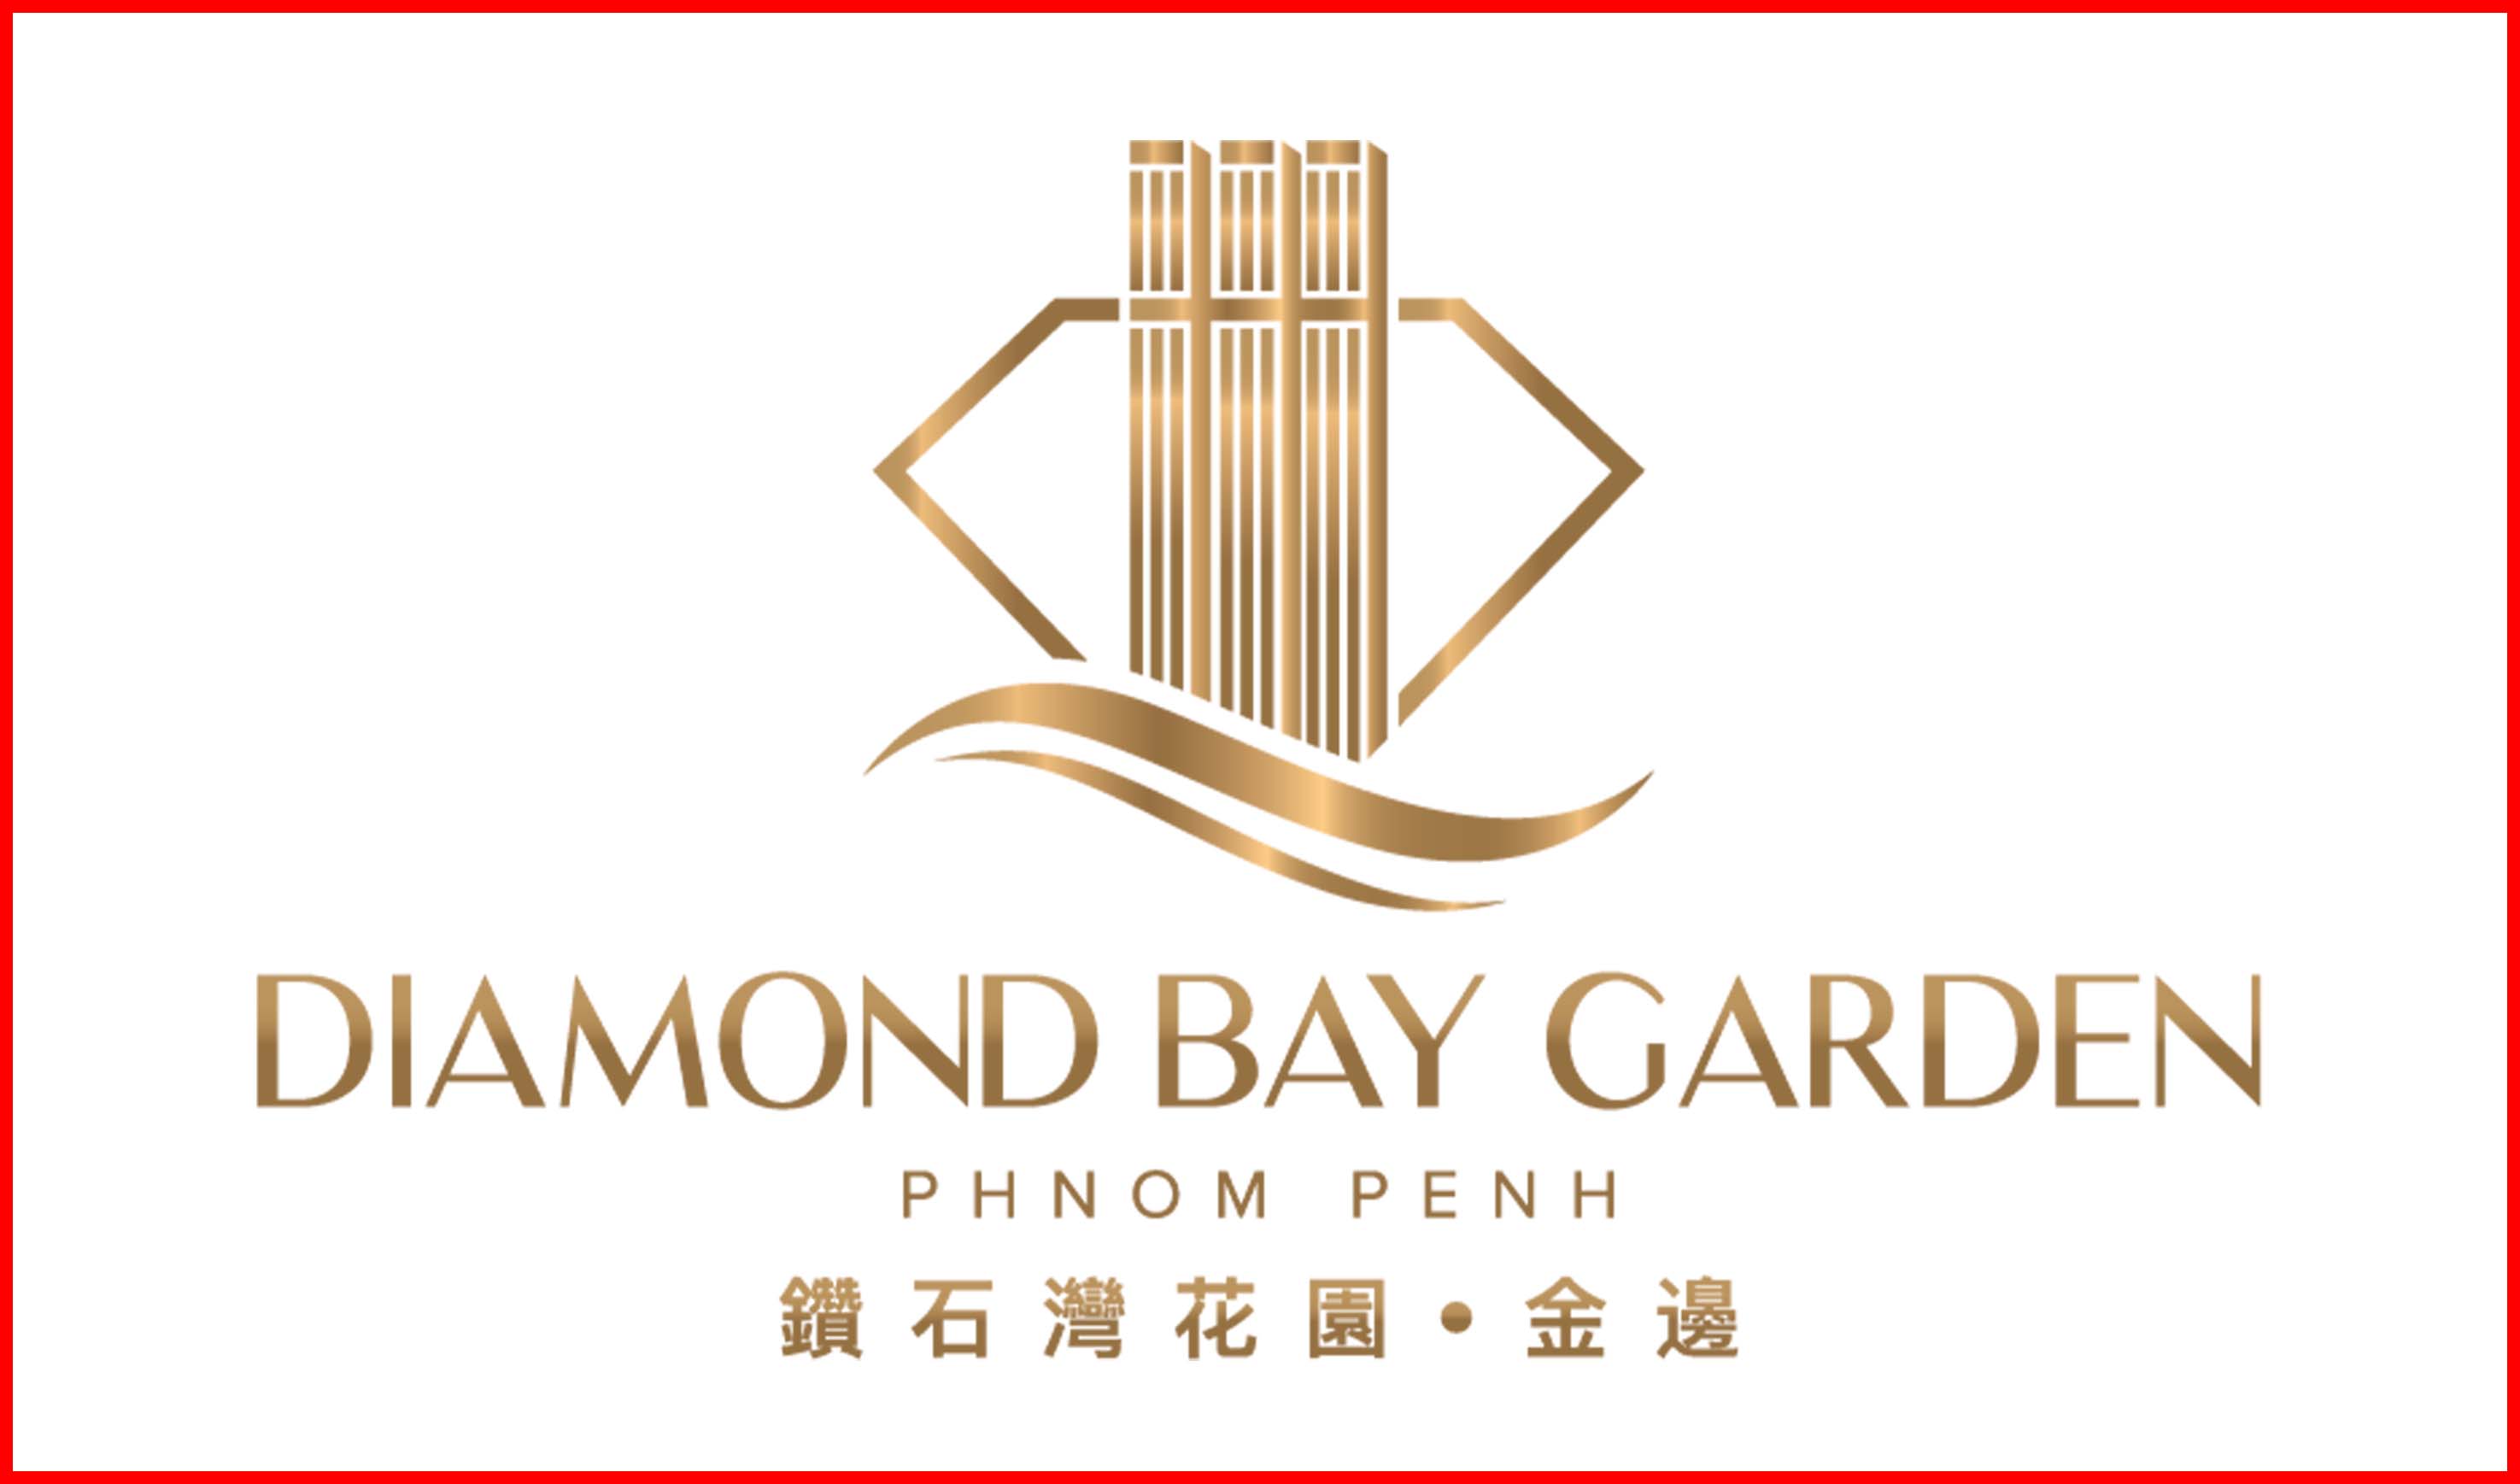 Diamond Bay Garden